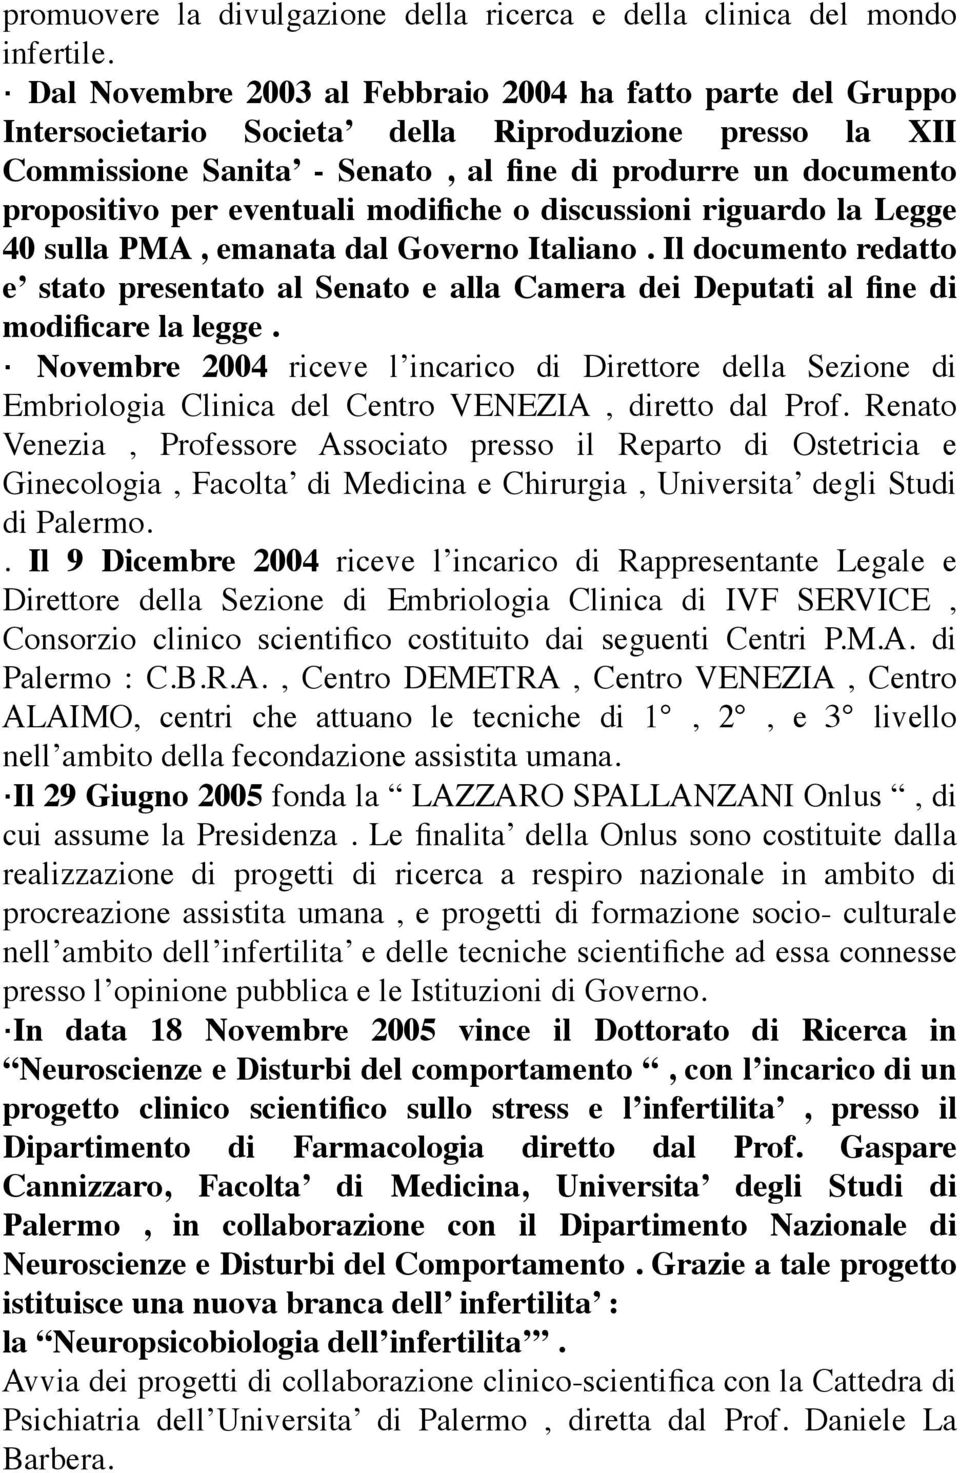 eventuali modifiche o discussioni riguardo la Legge 40 sulla PMA, emanata dal Governo Italiano.